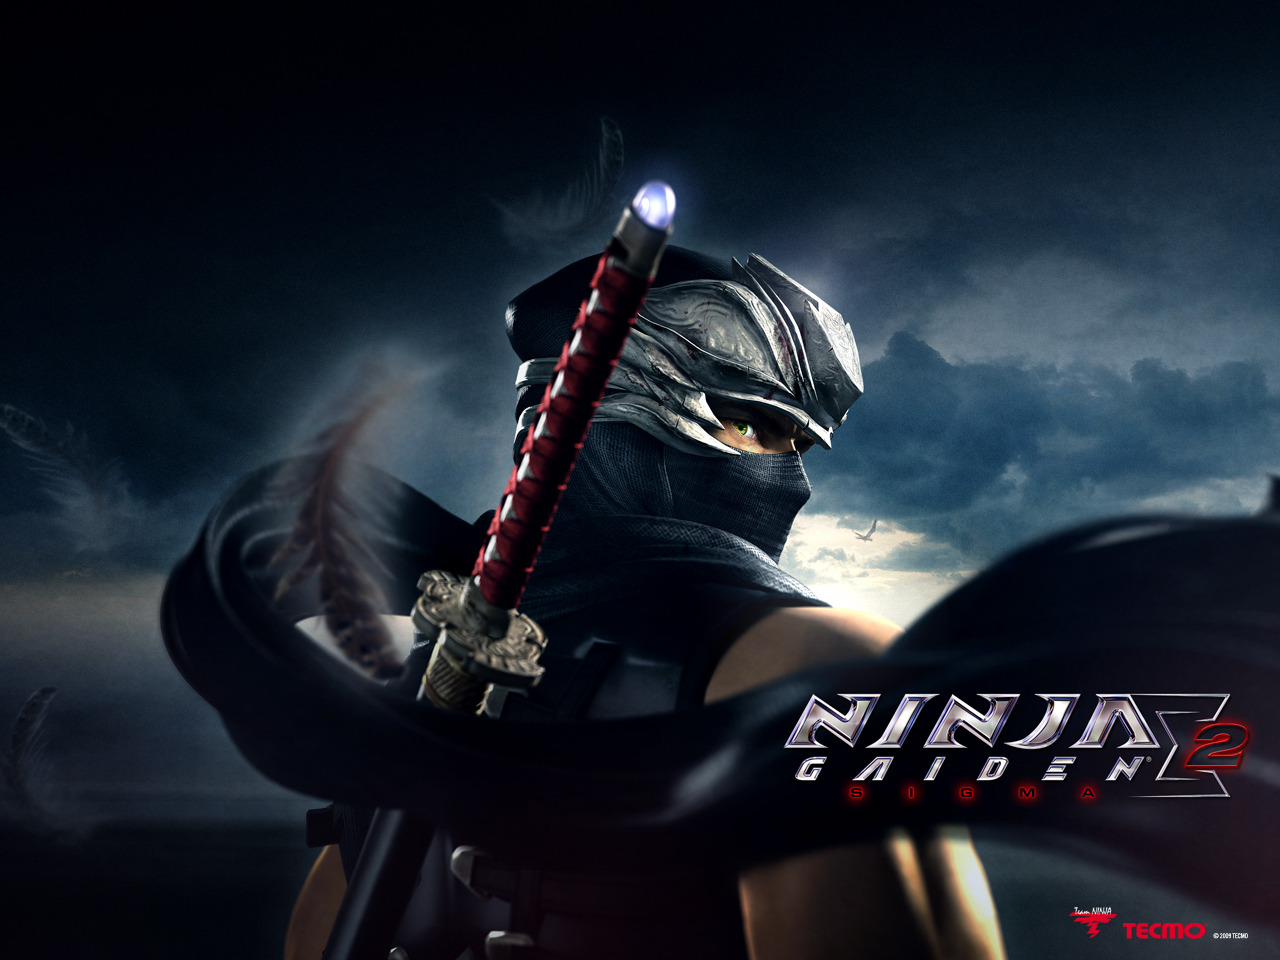 ... ninja gaiden sigma 2 has been revealed more details inside ninja